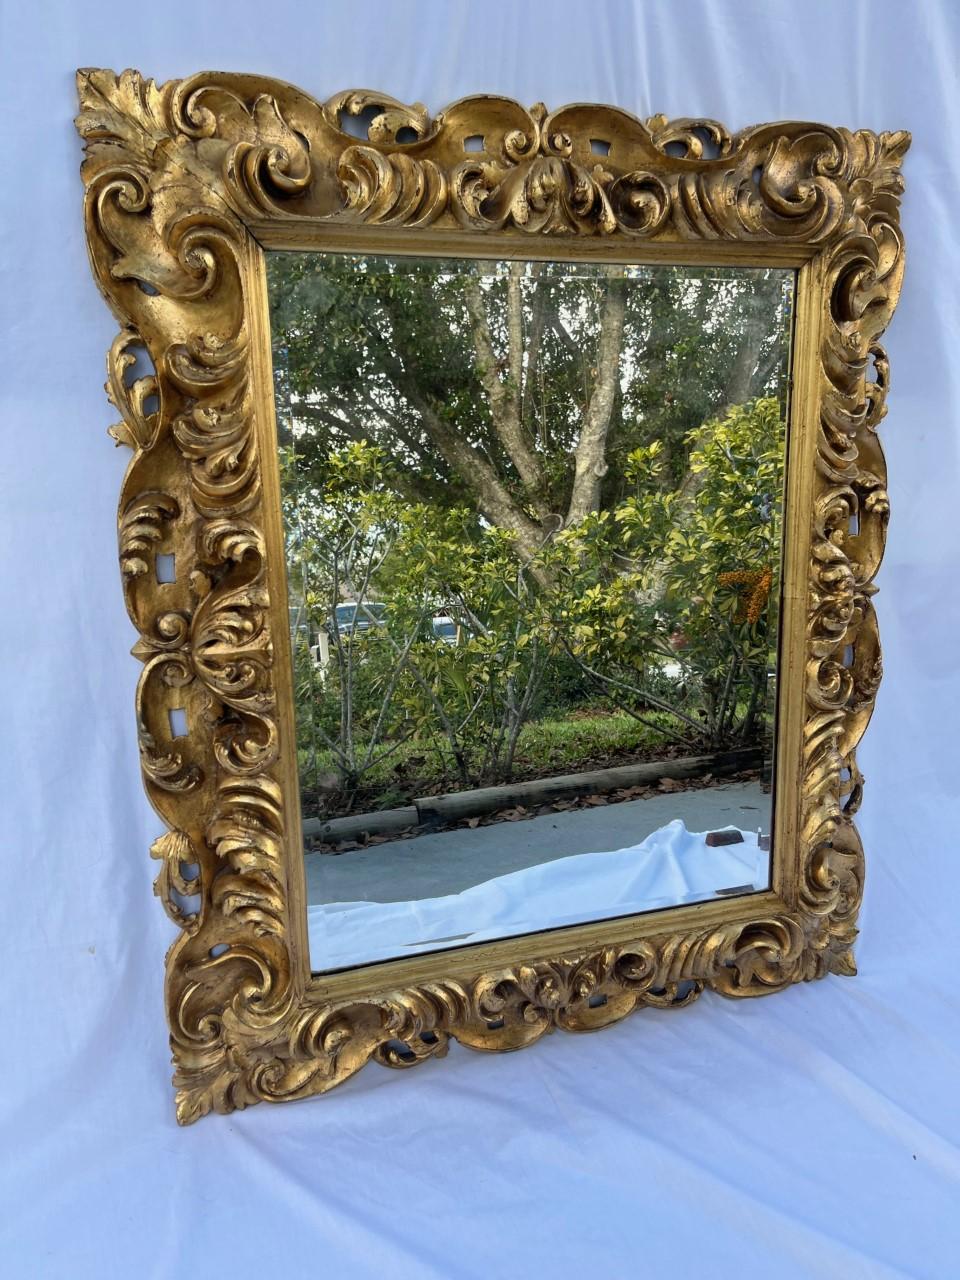 Spätes 18. Jahrhundert Barock Florentine Hand geschnitzt Giltwood Spiegel

Großer, spektakulärer Barockspiegel aus dem späten 18. Jahrhundert, mit reichlich handgeschnitztem Rahmen aus vergoldetem Blattwerk. Dieser Kunsthandwerker verwendete die